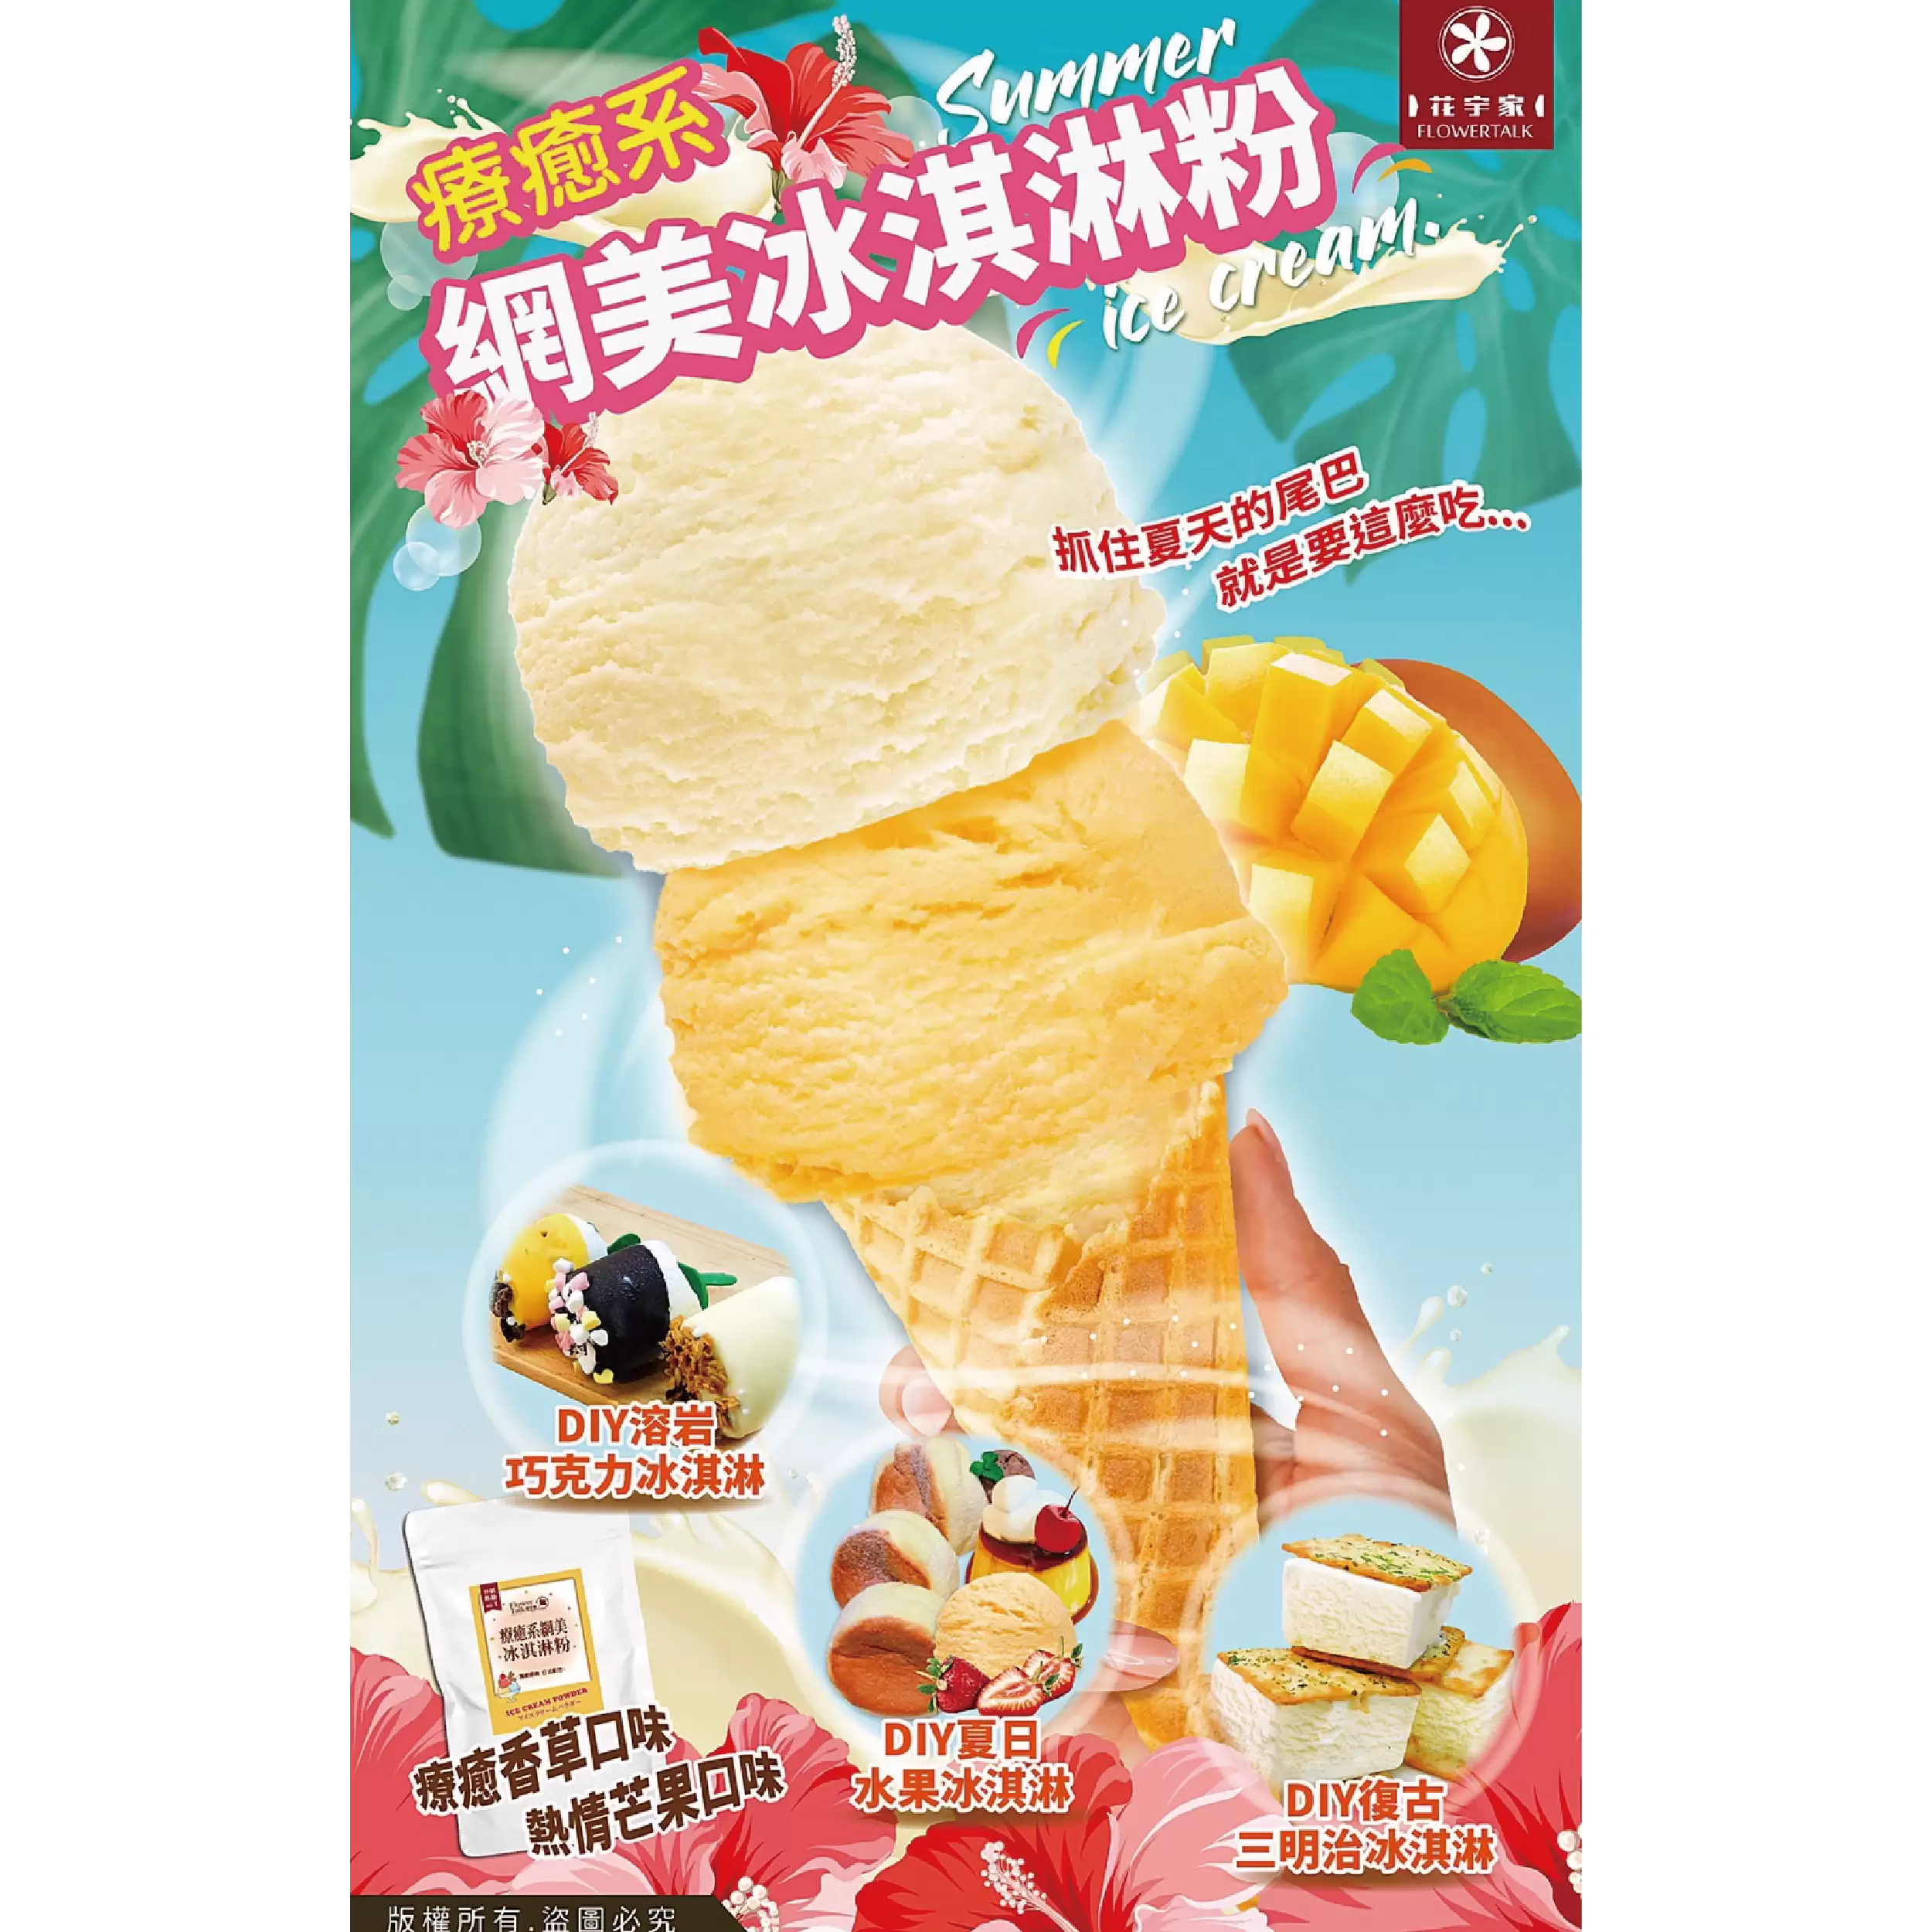 花宇家療癒系DIY冰淇淋粉